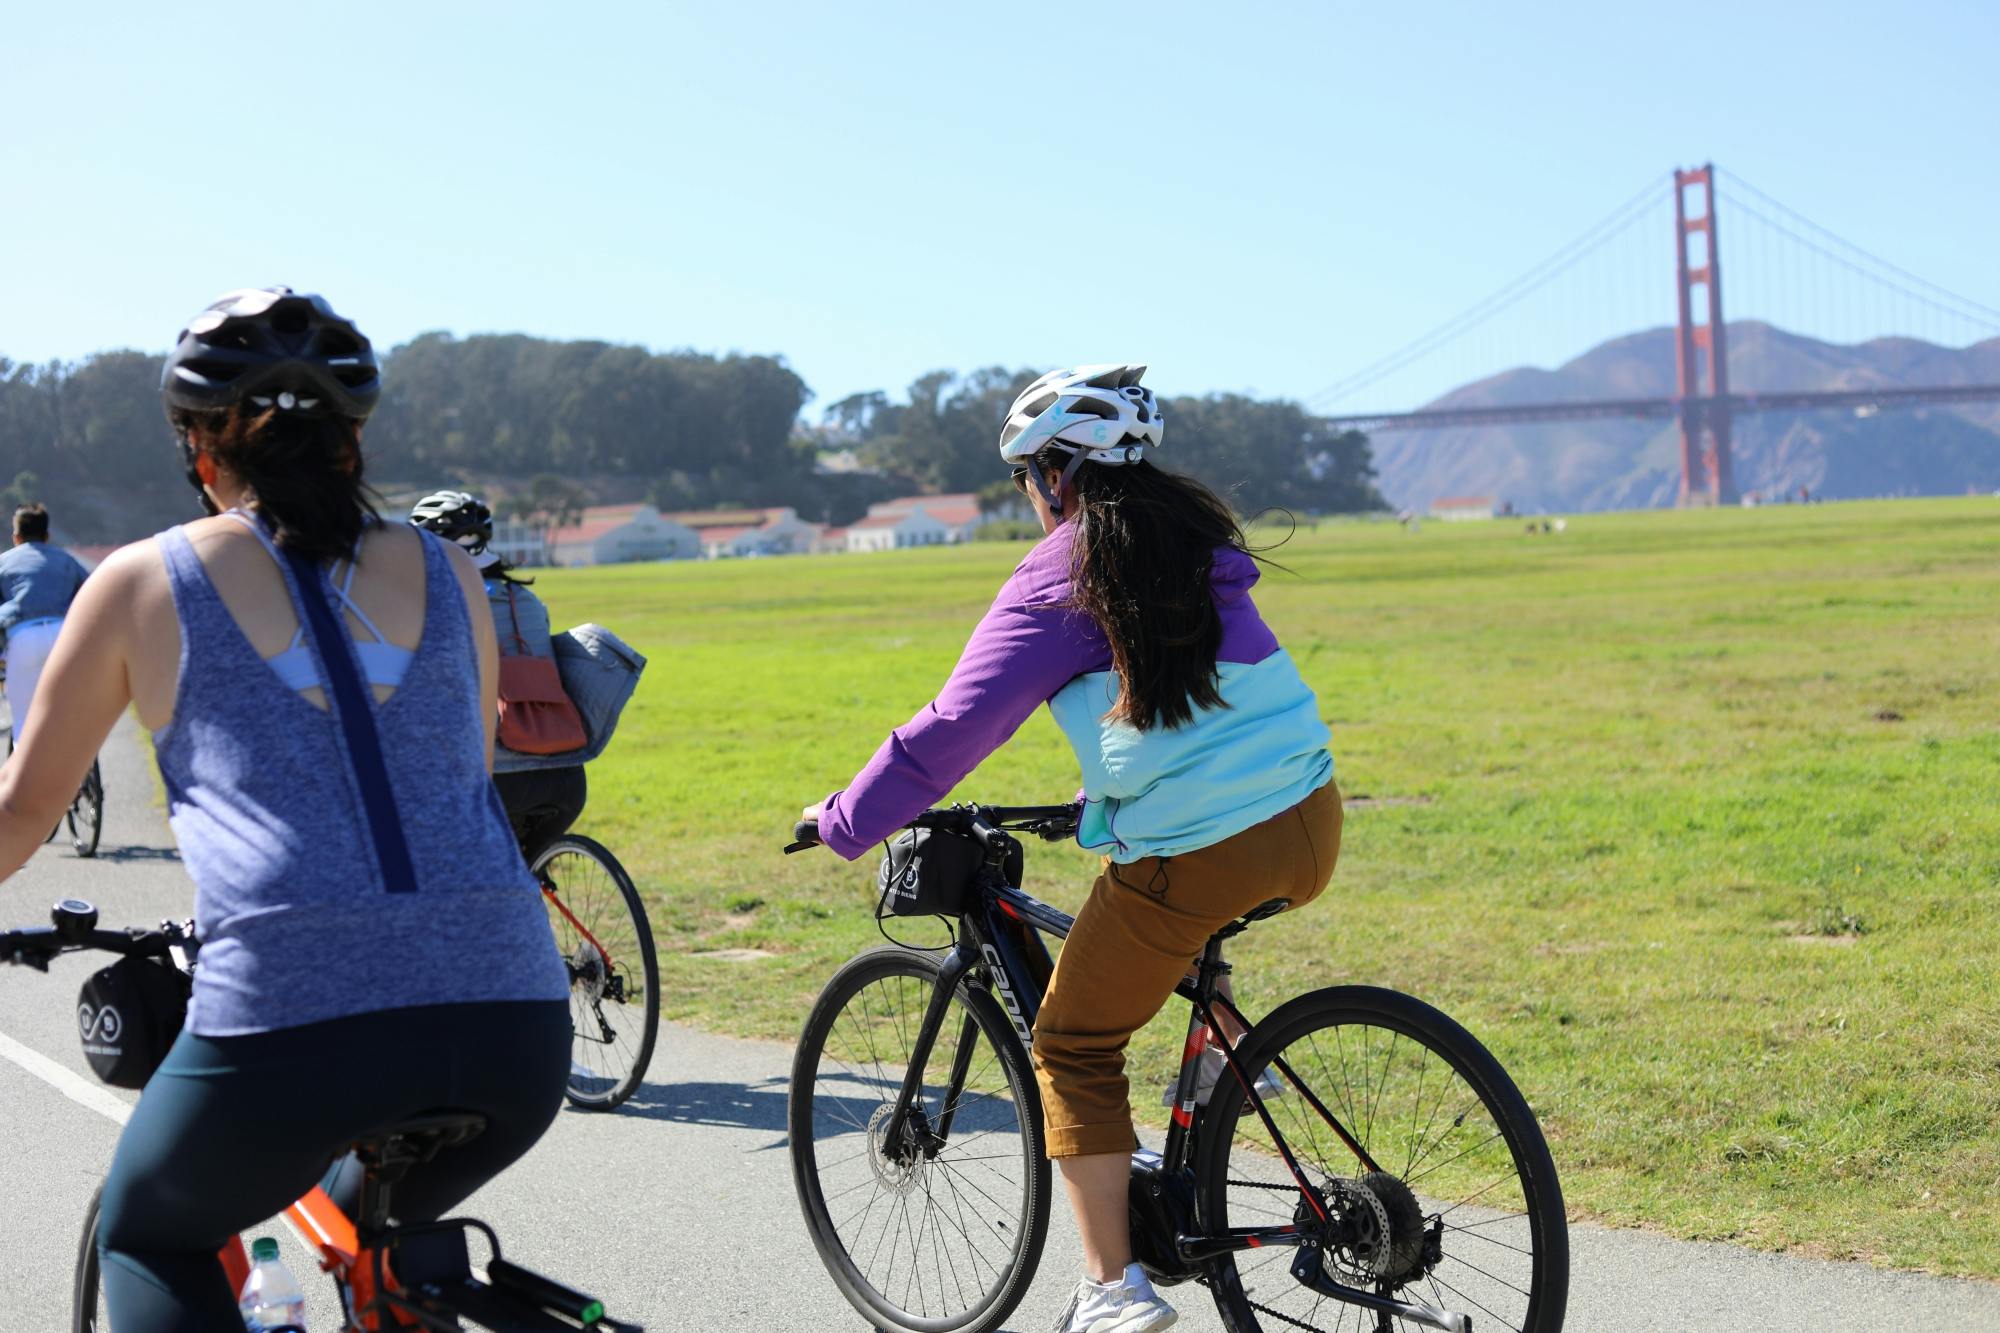 Destaques do passeio de bicicleta guiado pelo Golden Gate Park